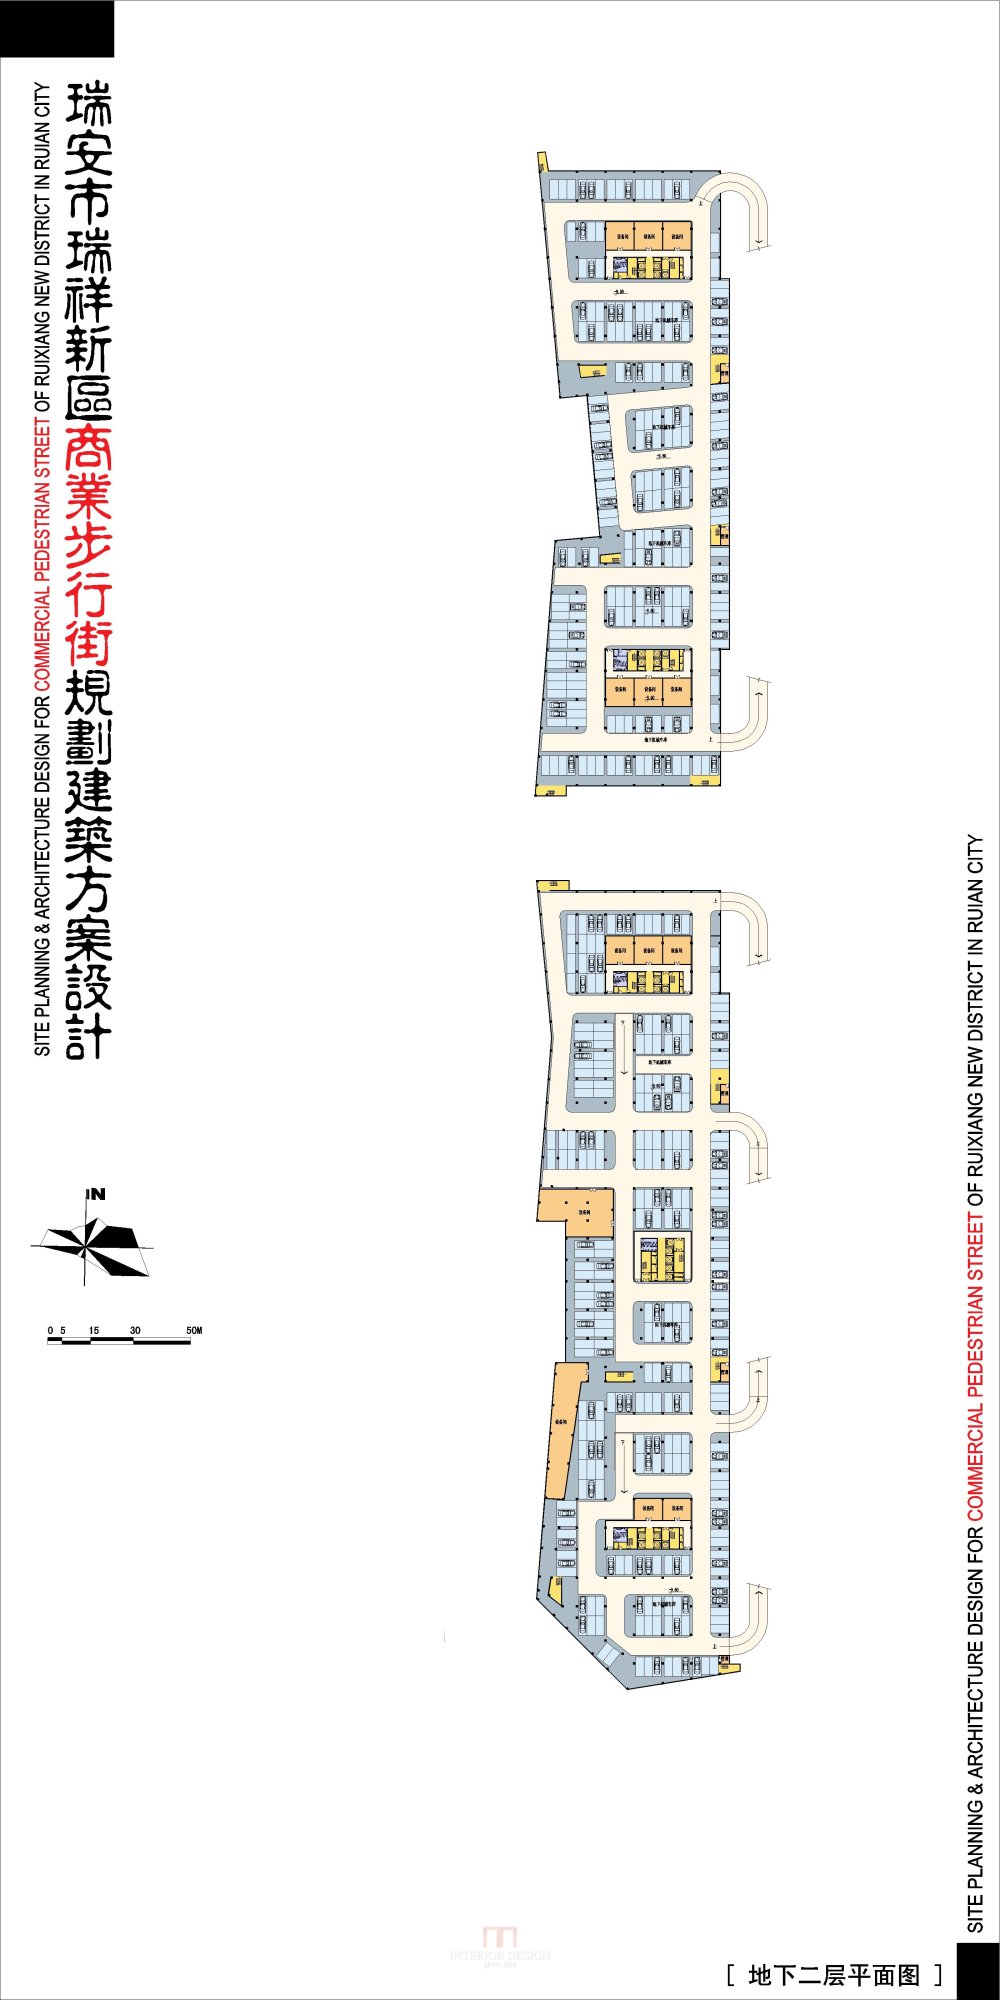 浙江瑞安新区商业步行街规划建筑设计方案_4-03瑞安商业街-地下二层平面图.jpg